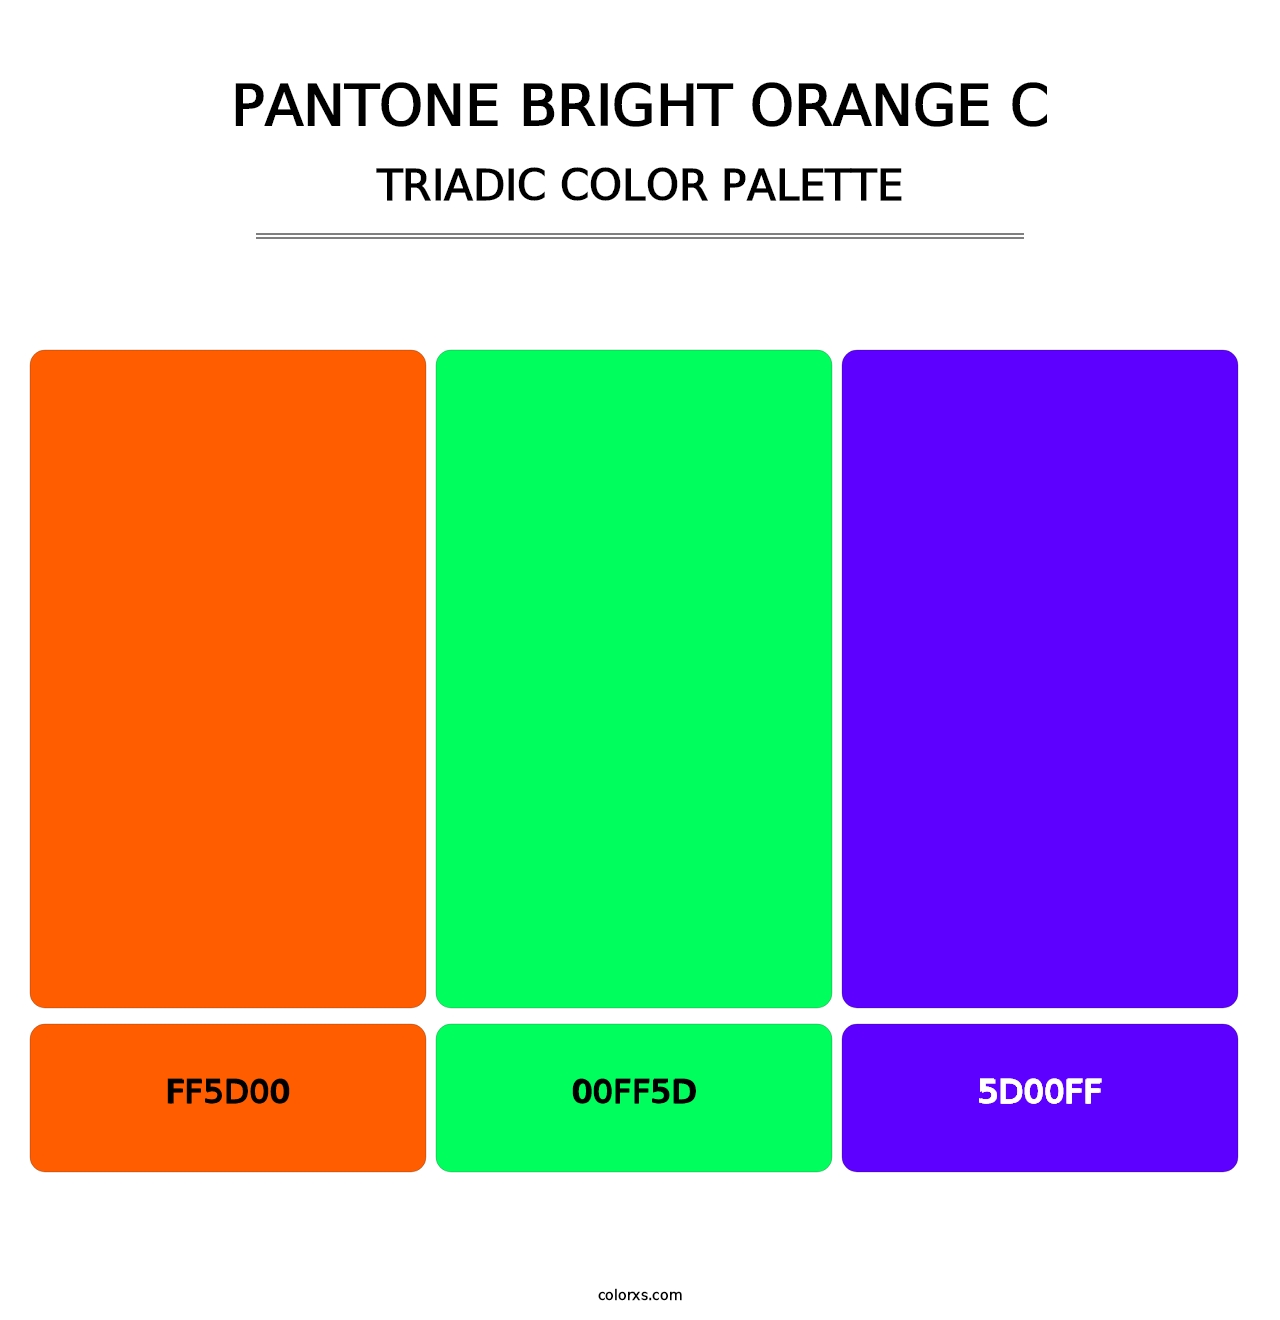 PANTONE Bright Orange C - Triadic Color Palette